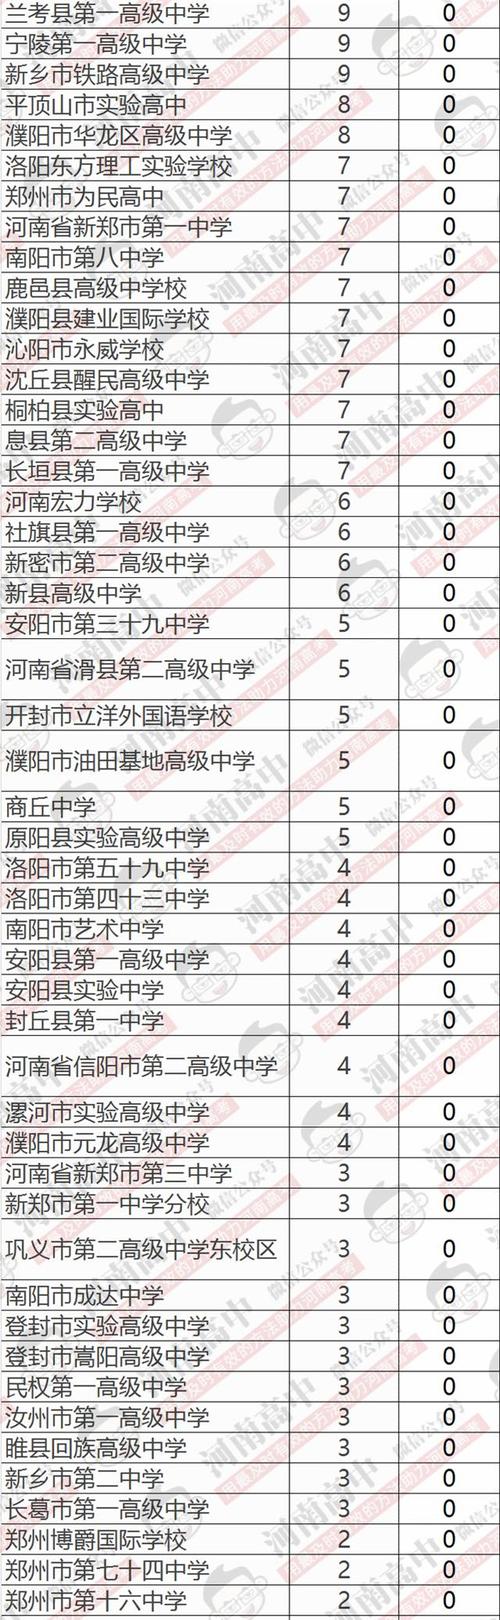 2017年河南自主招生院校名单汇总 河南省招生计划目录